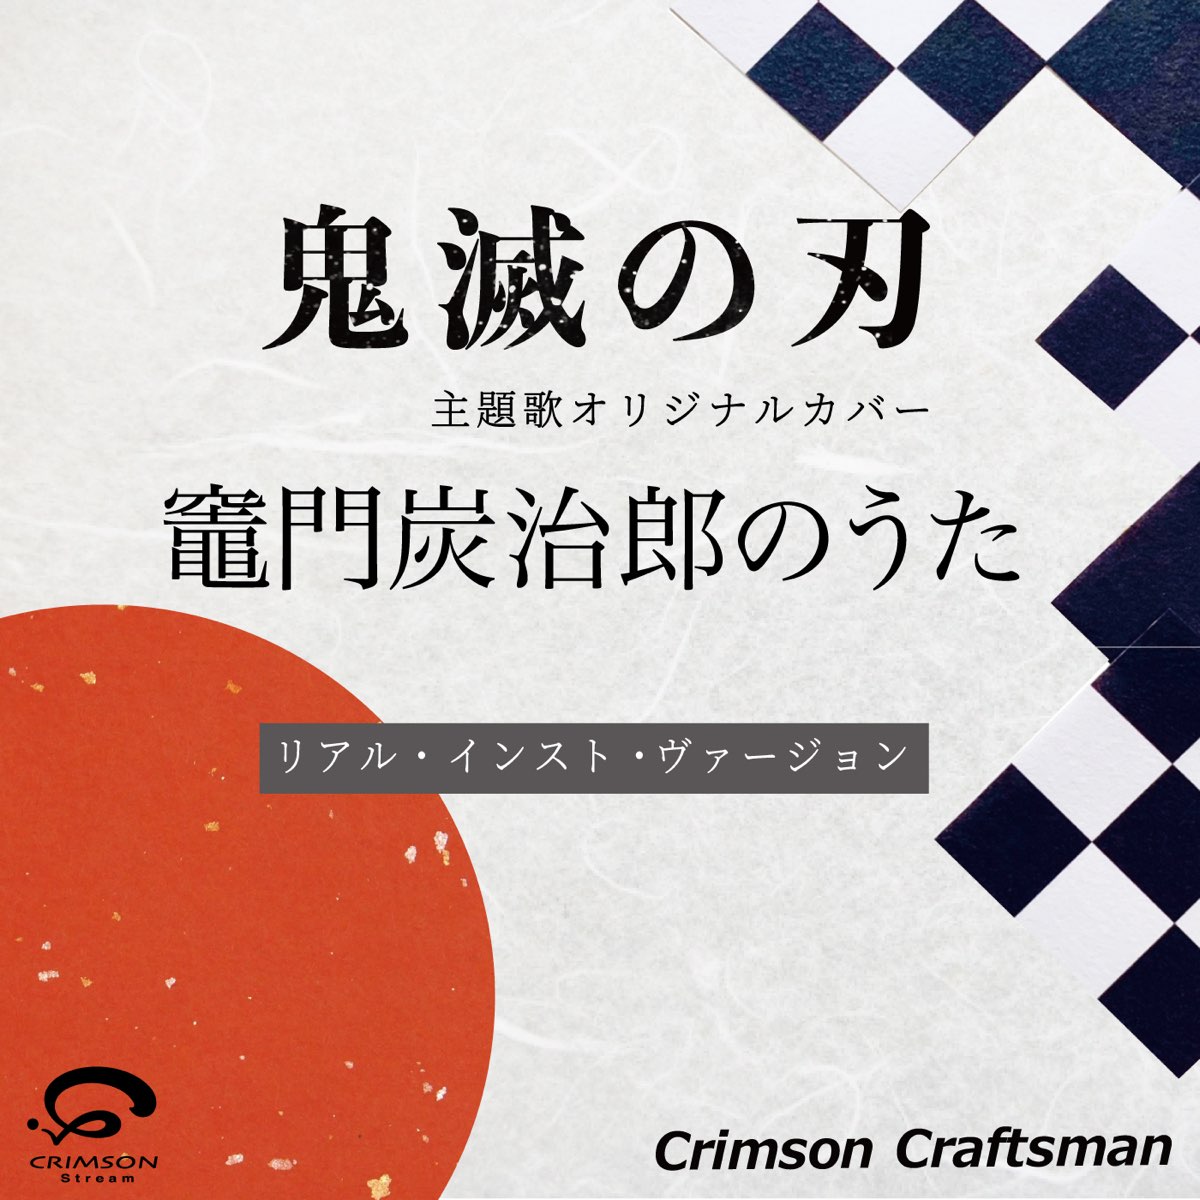 Crimson Craftsmanの 竈門炭治郎のうた 鬼滅の刃 挿入歌 リアル インスト ヴァージョン Single をapple Musicで